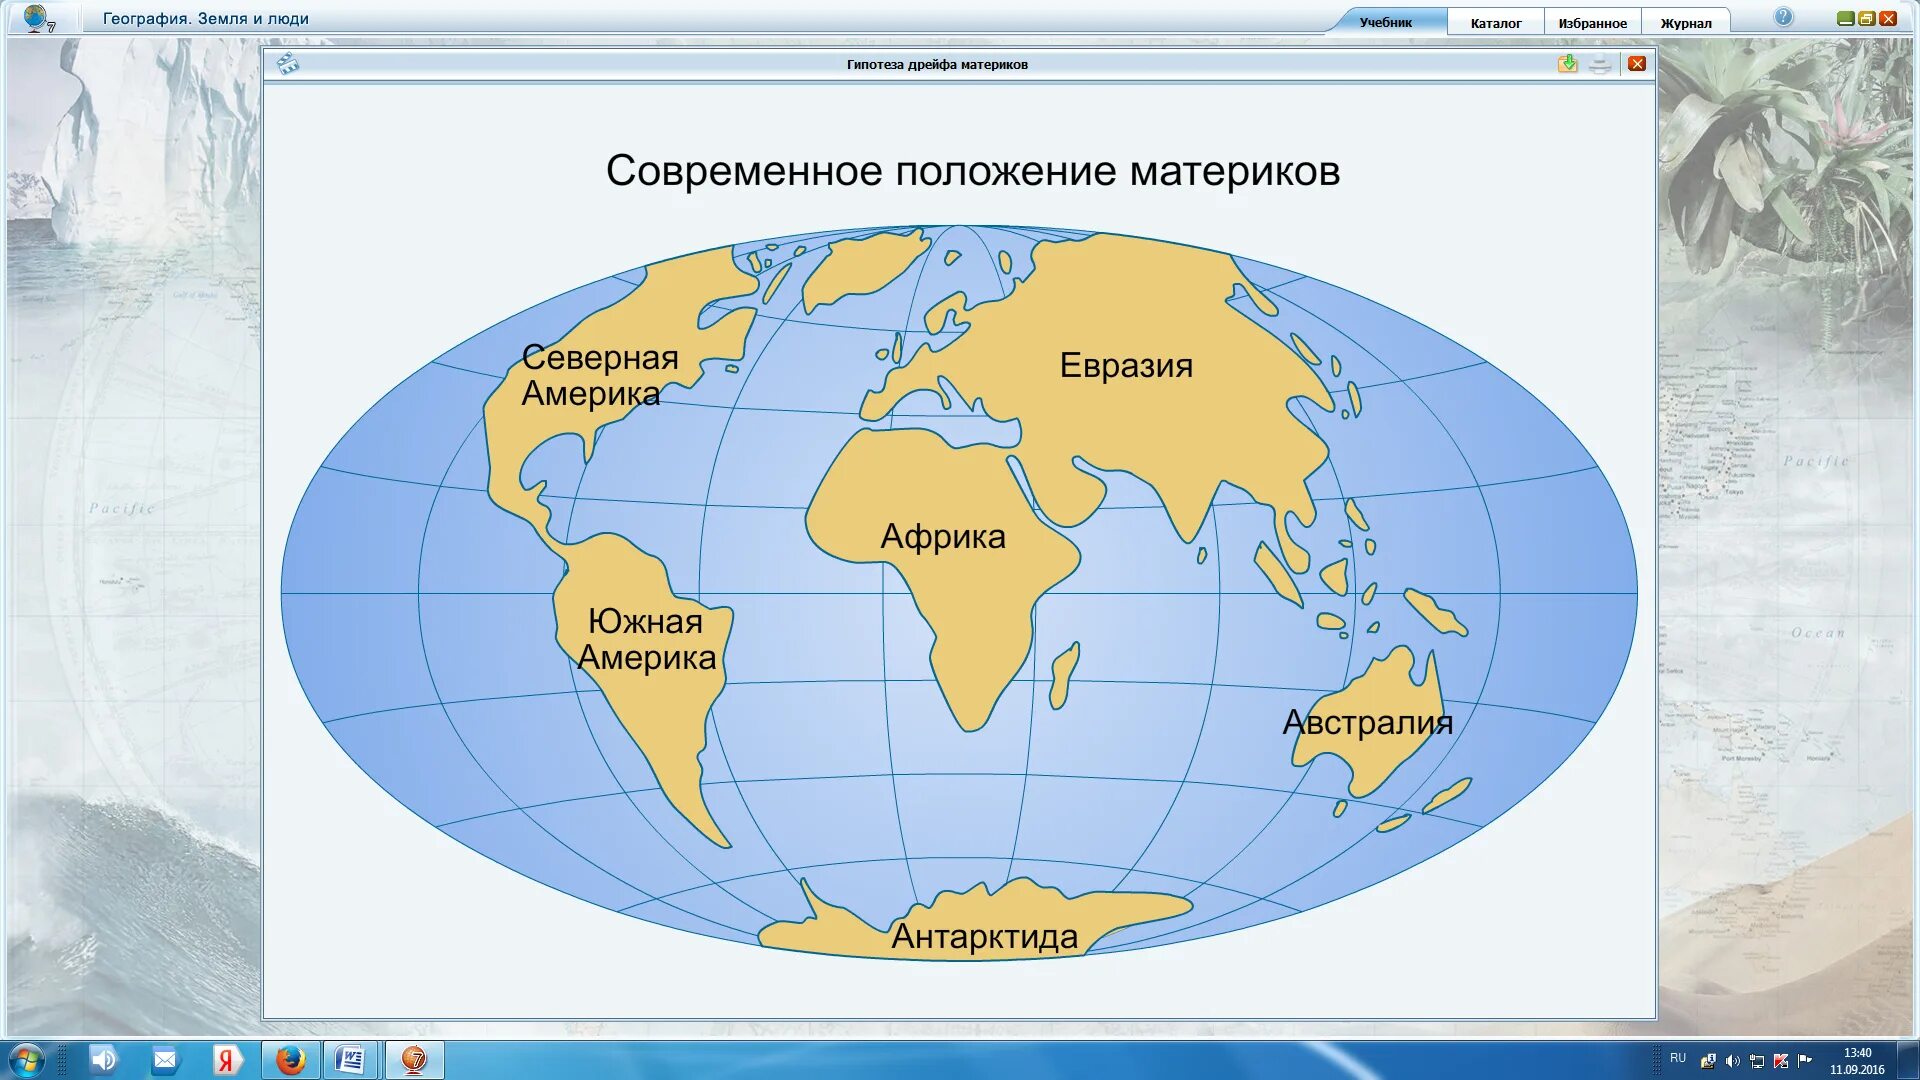 Материки земного шара на карте с названиями. Материки на карте с названиями. Название материков. Карта отдельных материков